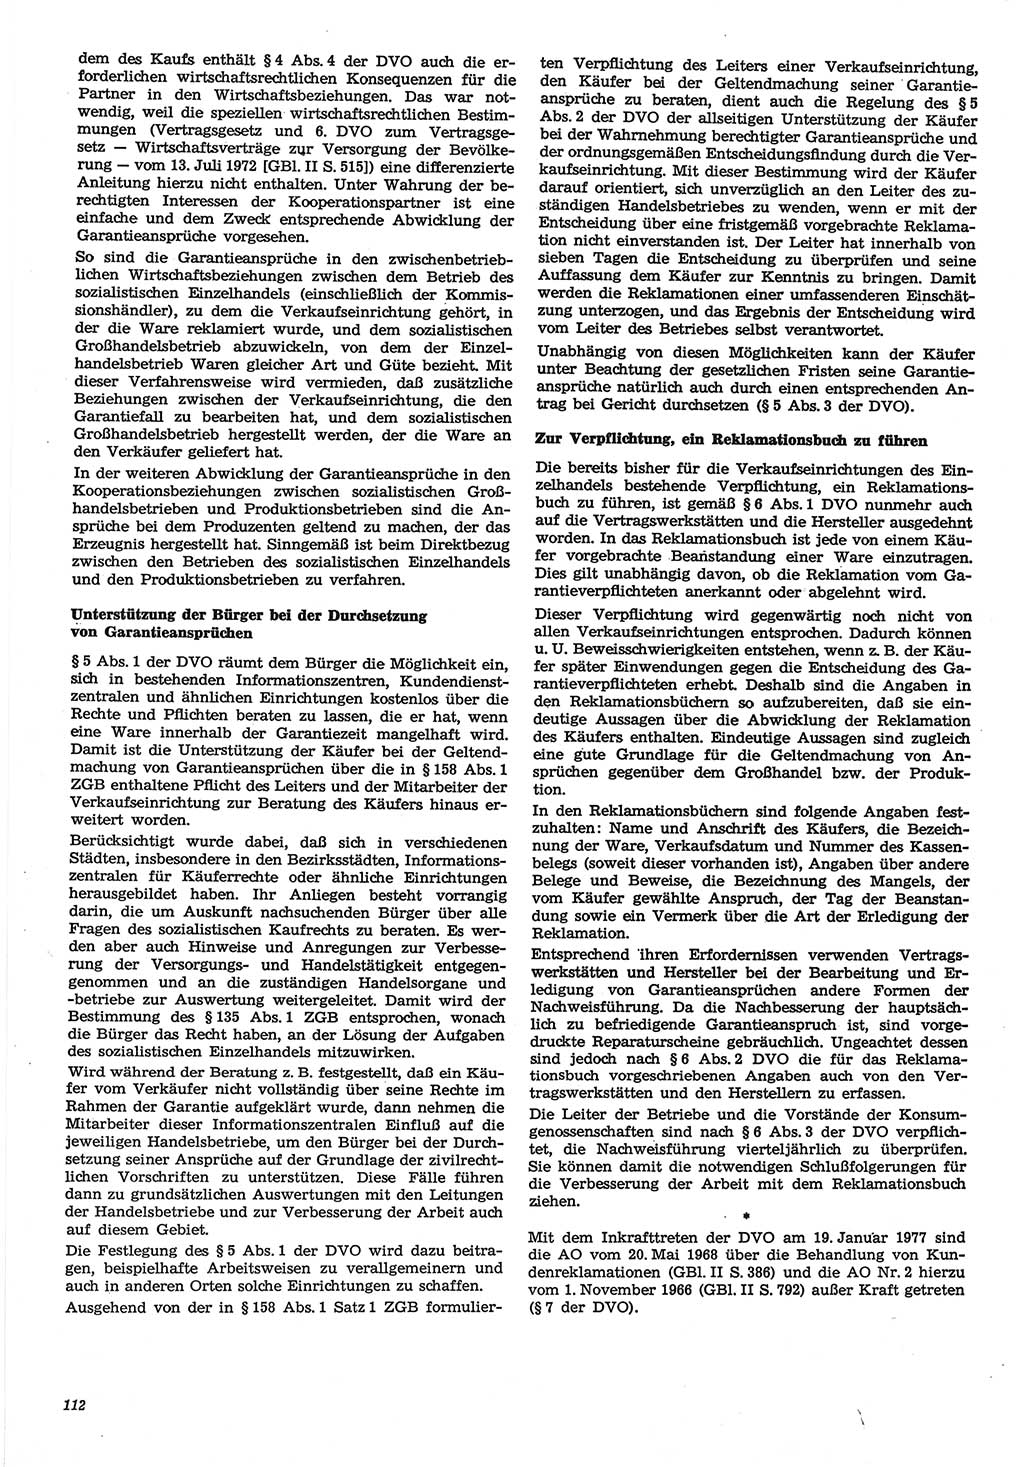 Neue Justiz (NJ), Zeitschrift für Recht und Rechtswissenschaft-Zeitschrift, sozialistisches Recht und Gesetzlichkeit, 31. Jahrgang 1977, Seite 112 (NJ DDR 1977, S. 112)